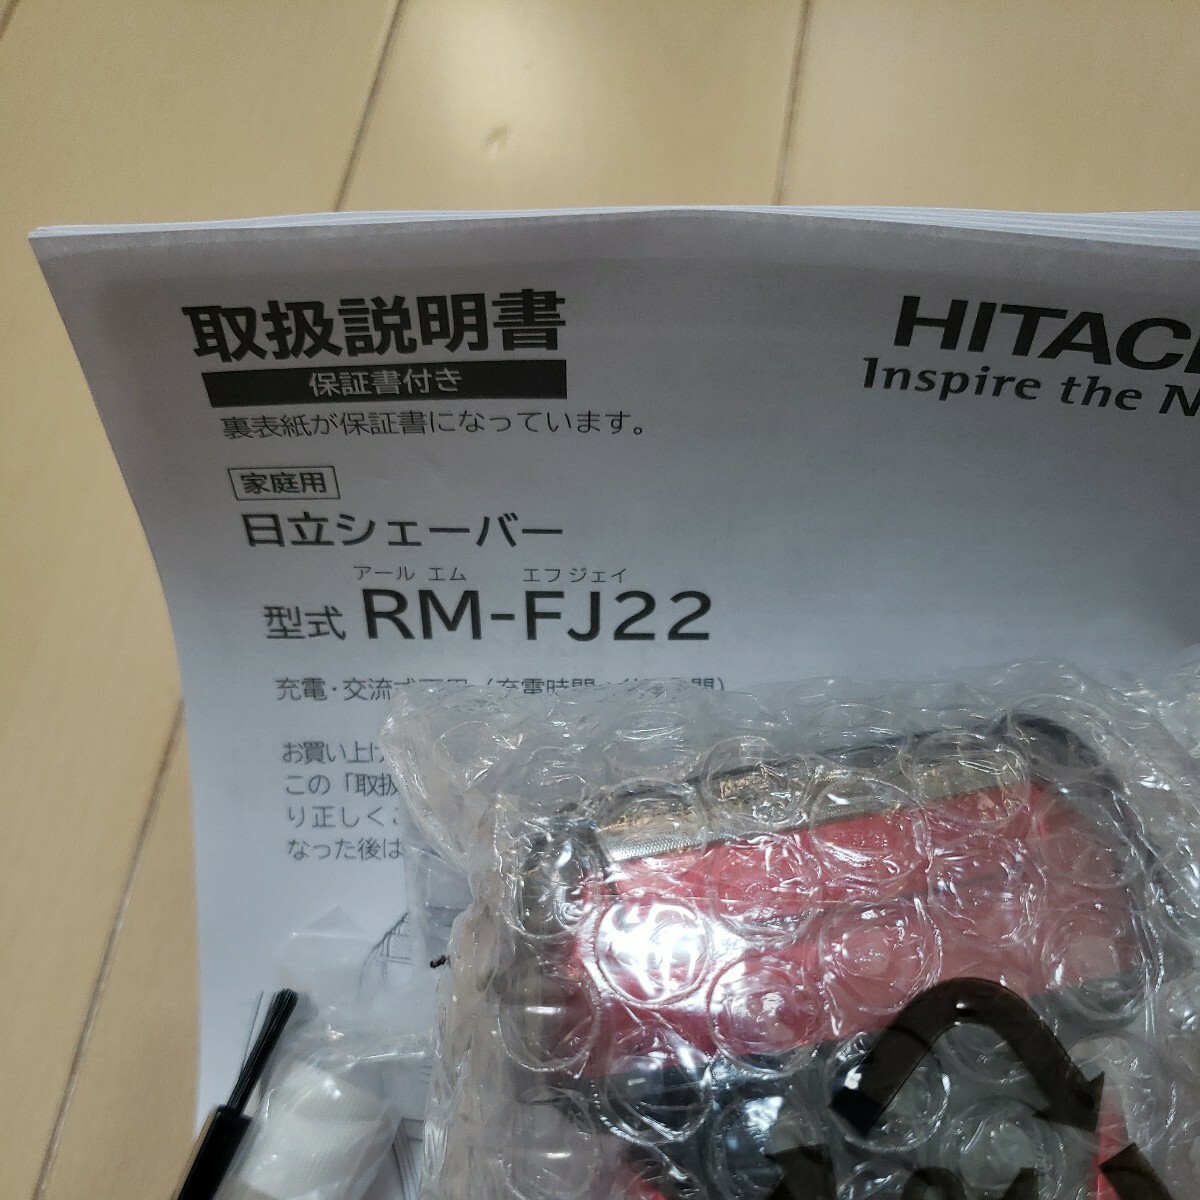  новый товар не использовался * быстрое решение * последняя модель Hitachi бритва es лезвие HITACHI мужской бритва RM FJ22japa сеть оригинал красный 